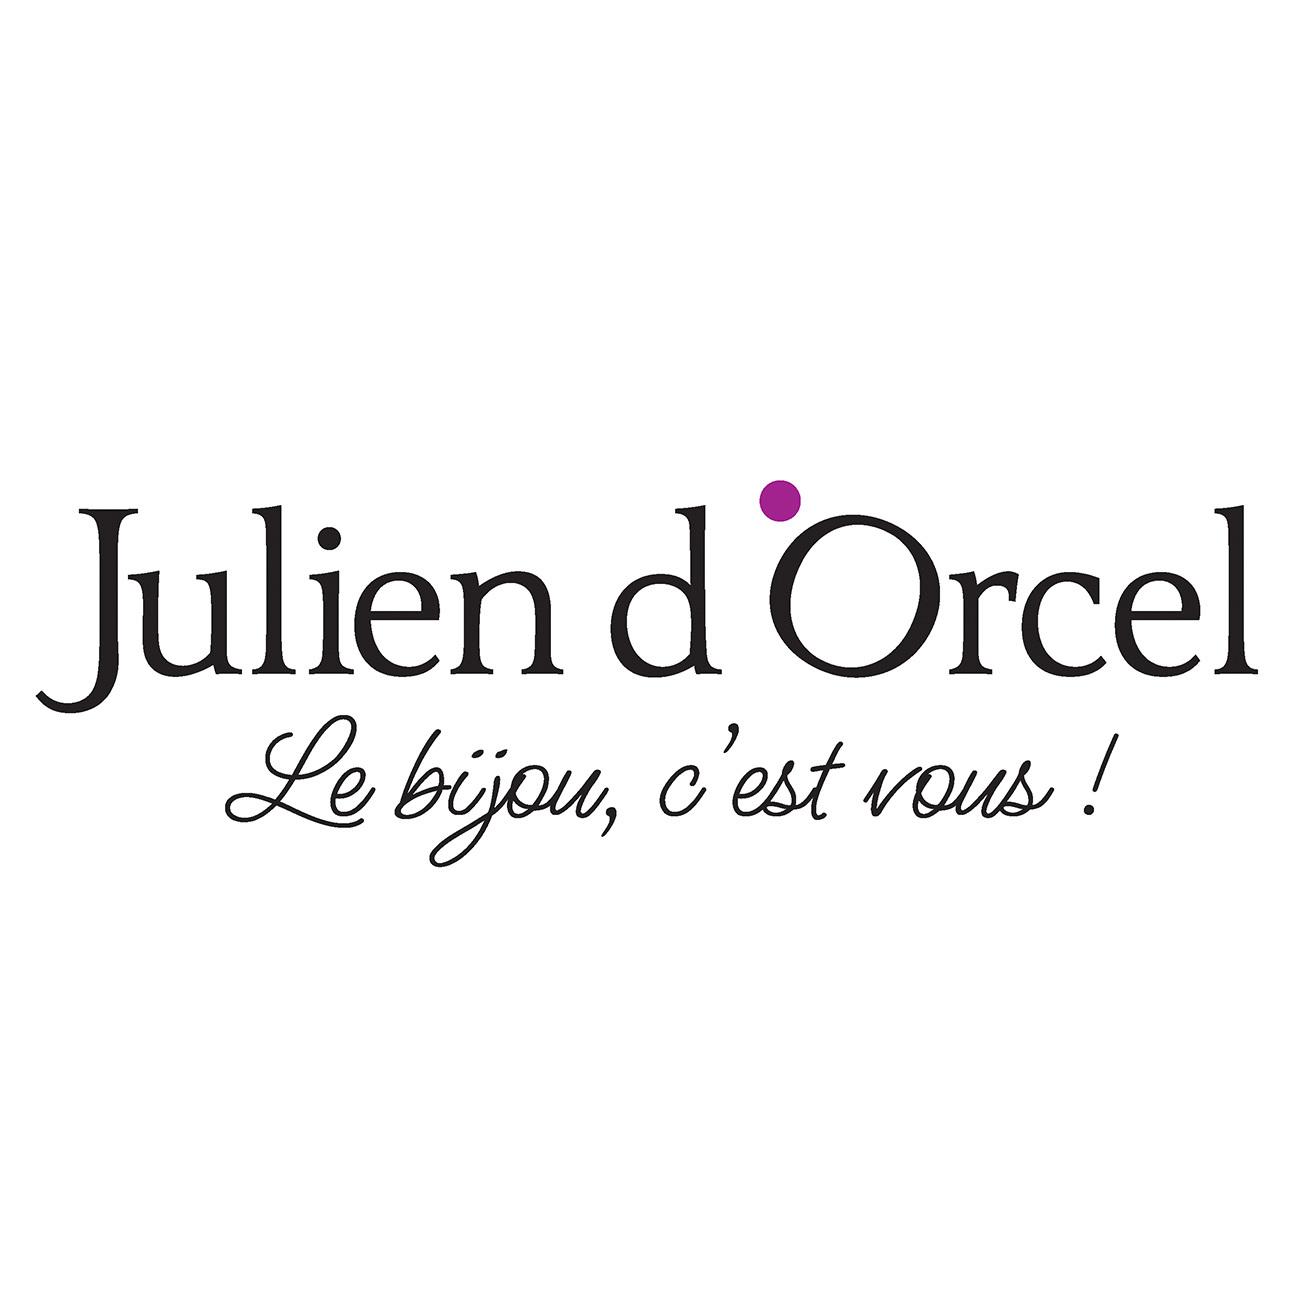 Julien D'orcel Friville Escarbotin